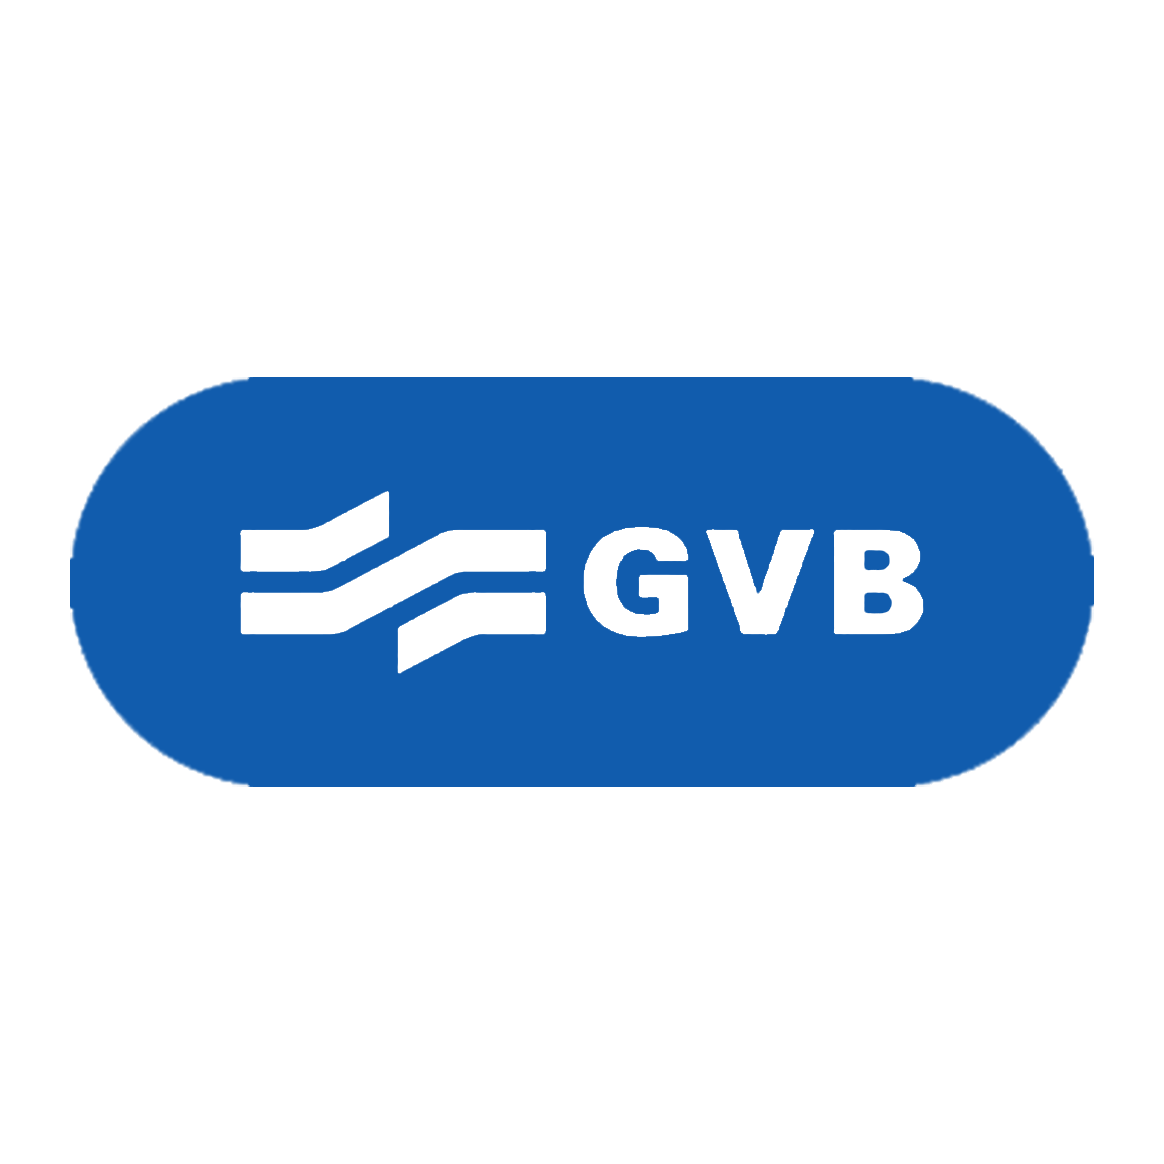 GVB